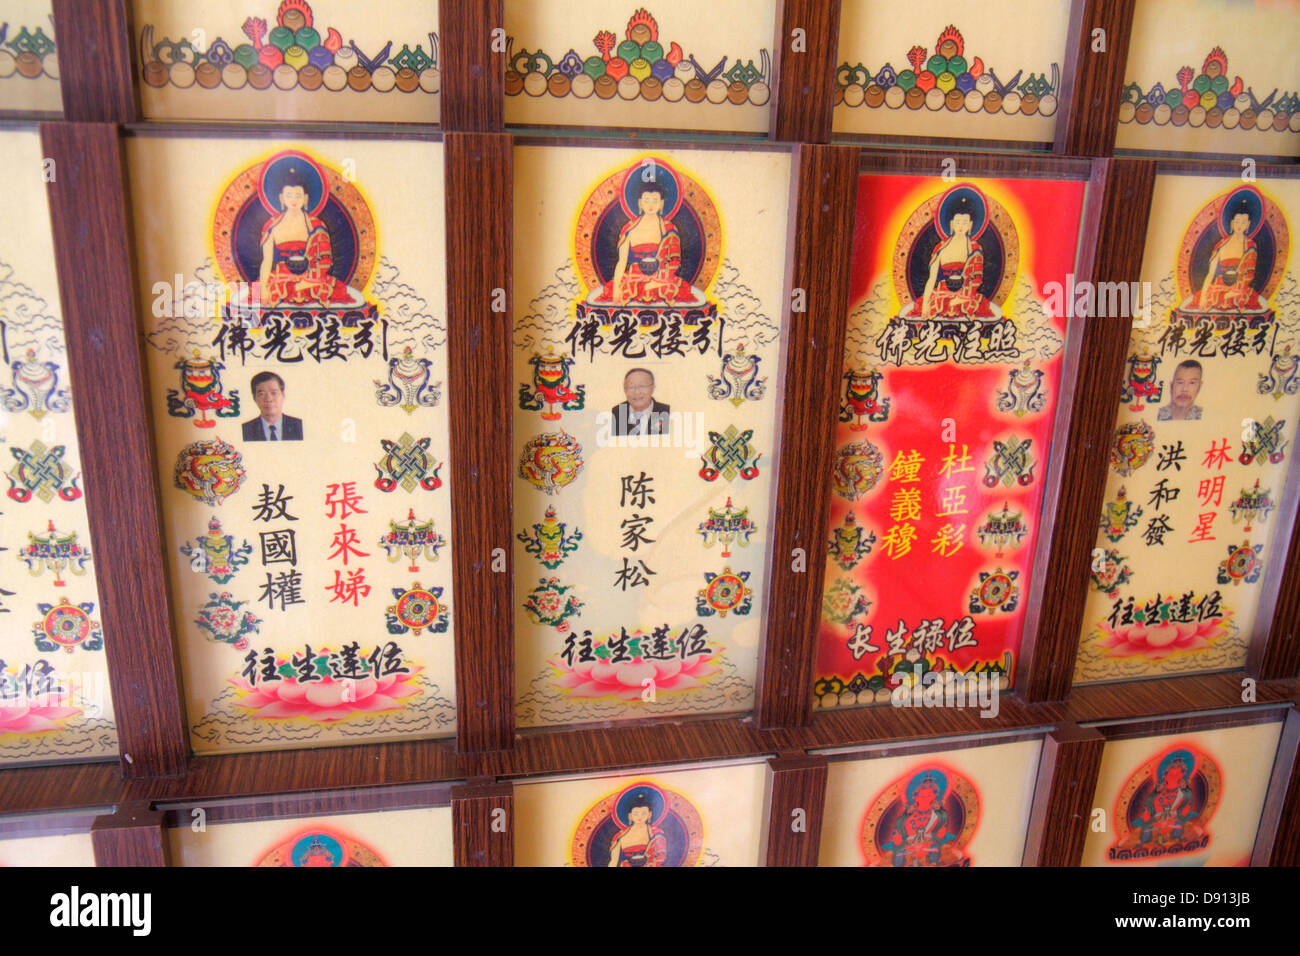 Singapur Thekchen Choling, tibetisch-buddhistischer Tempel, Organisation, Buddhismus, Religion, hanzi, Charakter, Chinesisch, Sing130201019 Stockfoto